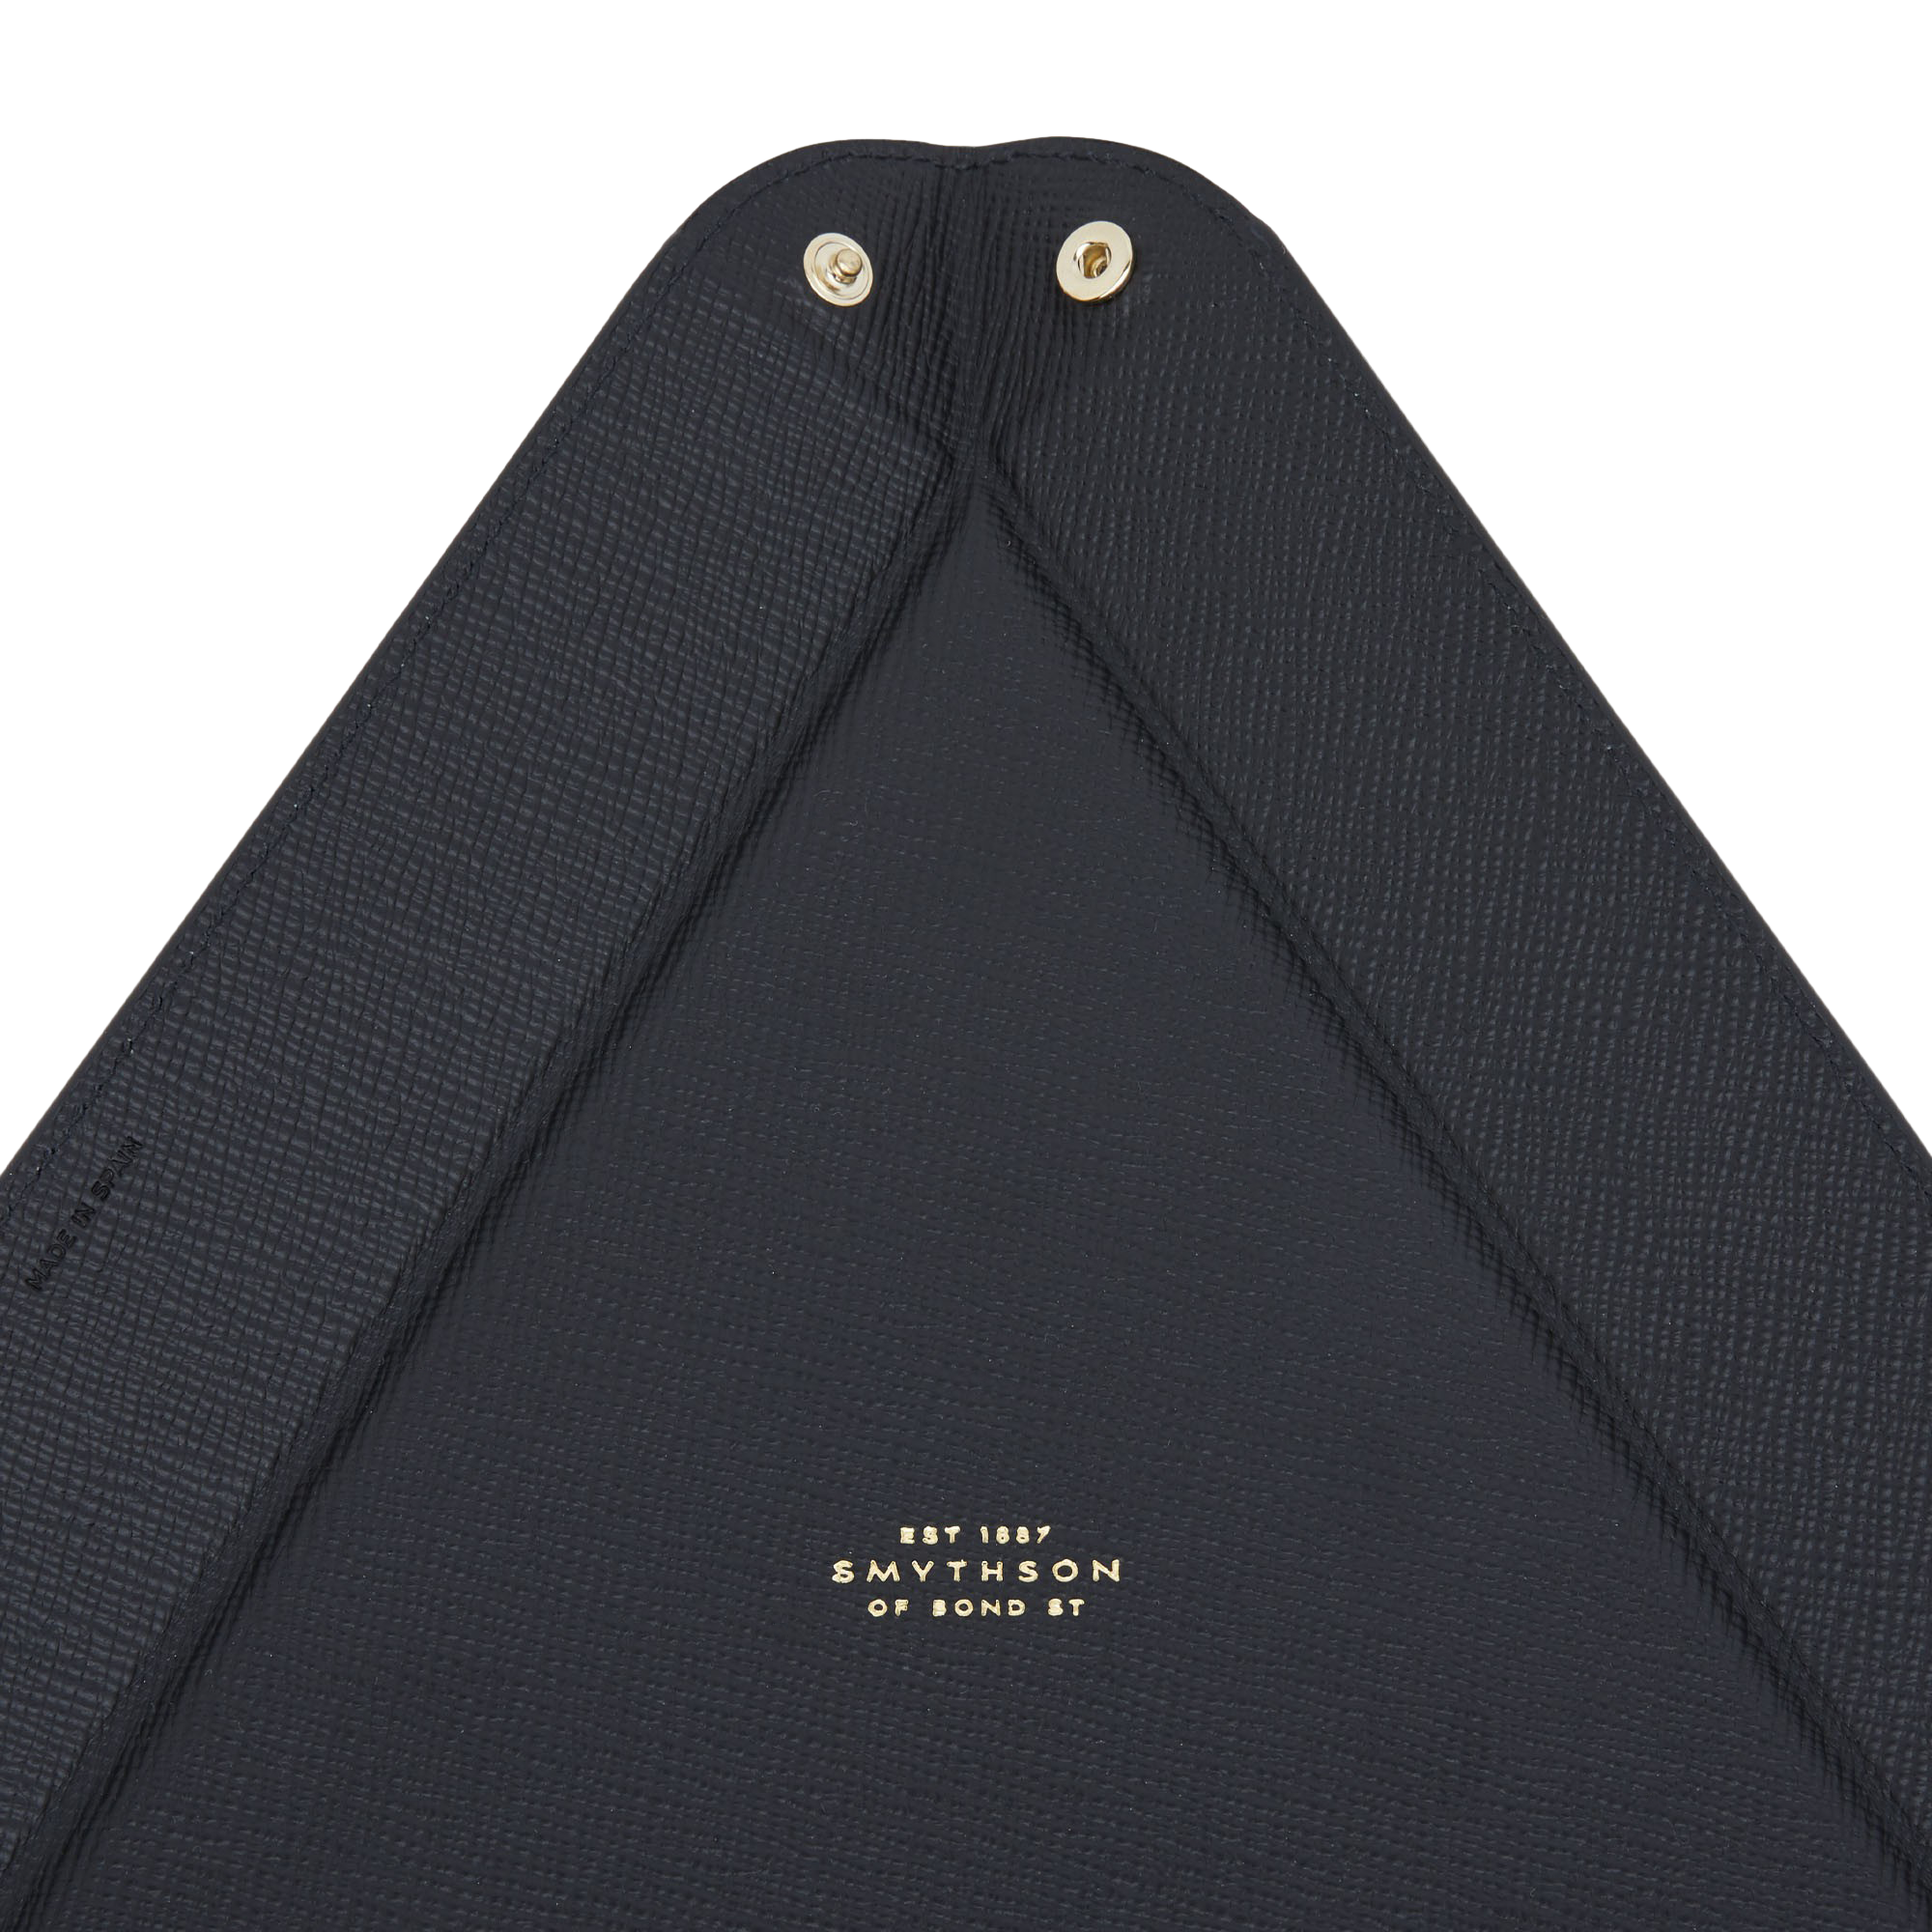 Smythson Black Panama Leather Large Triangle Tray Detail